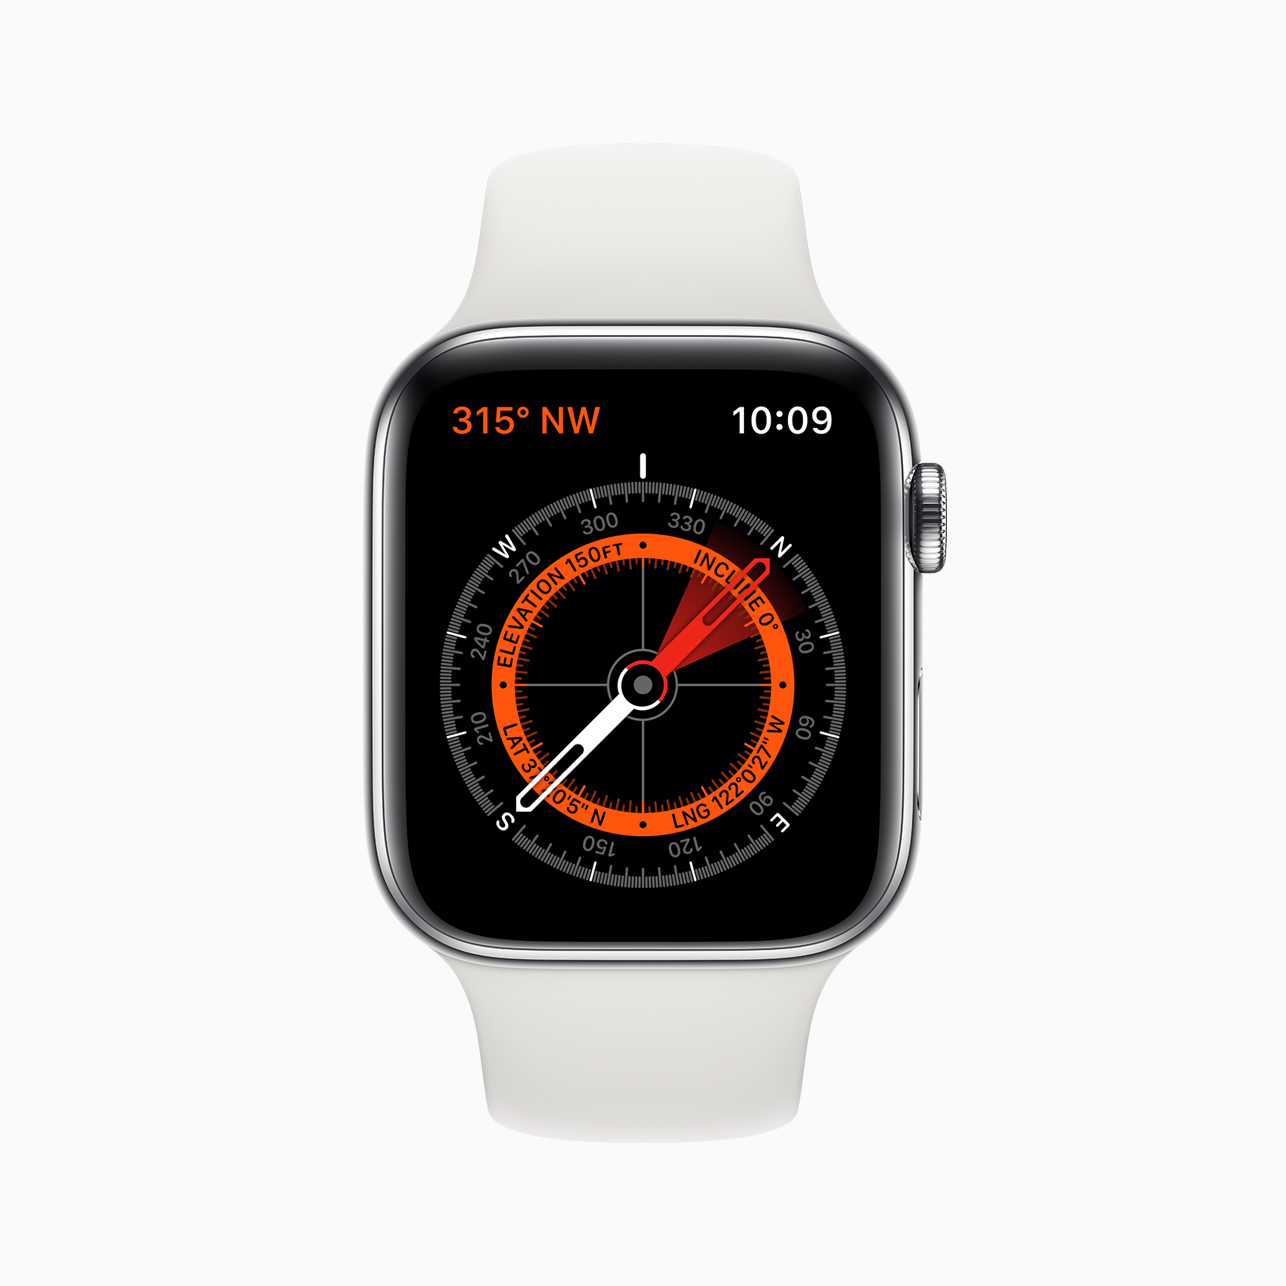 Apple_watch_series_5-compass-screen-091019